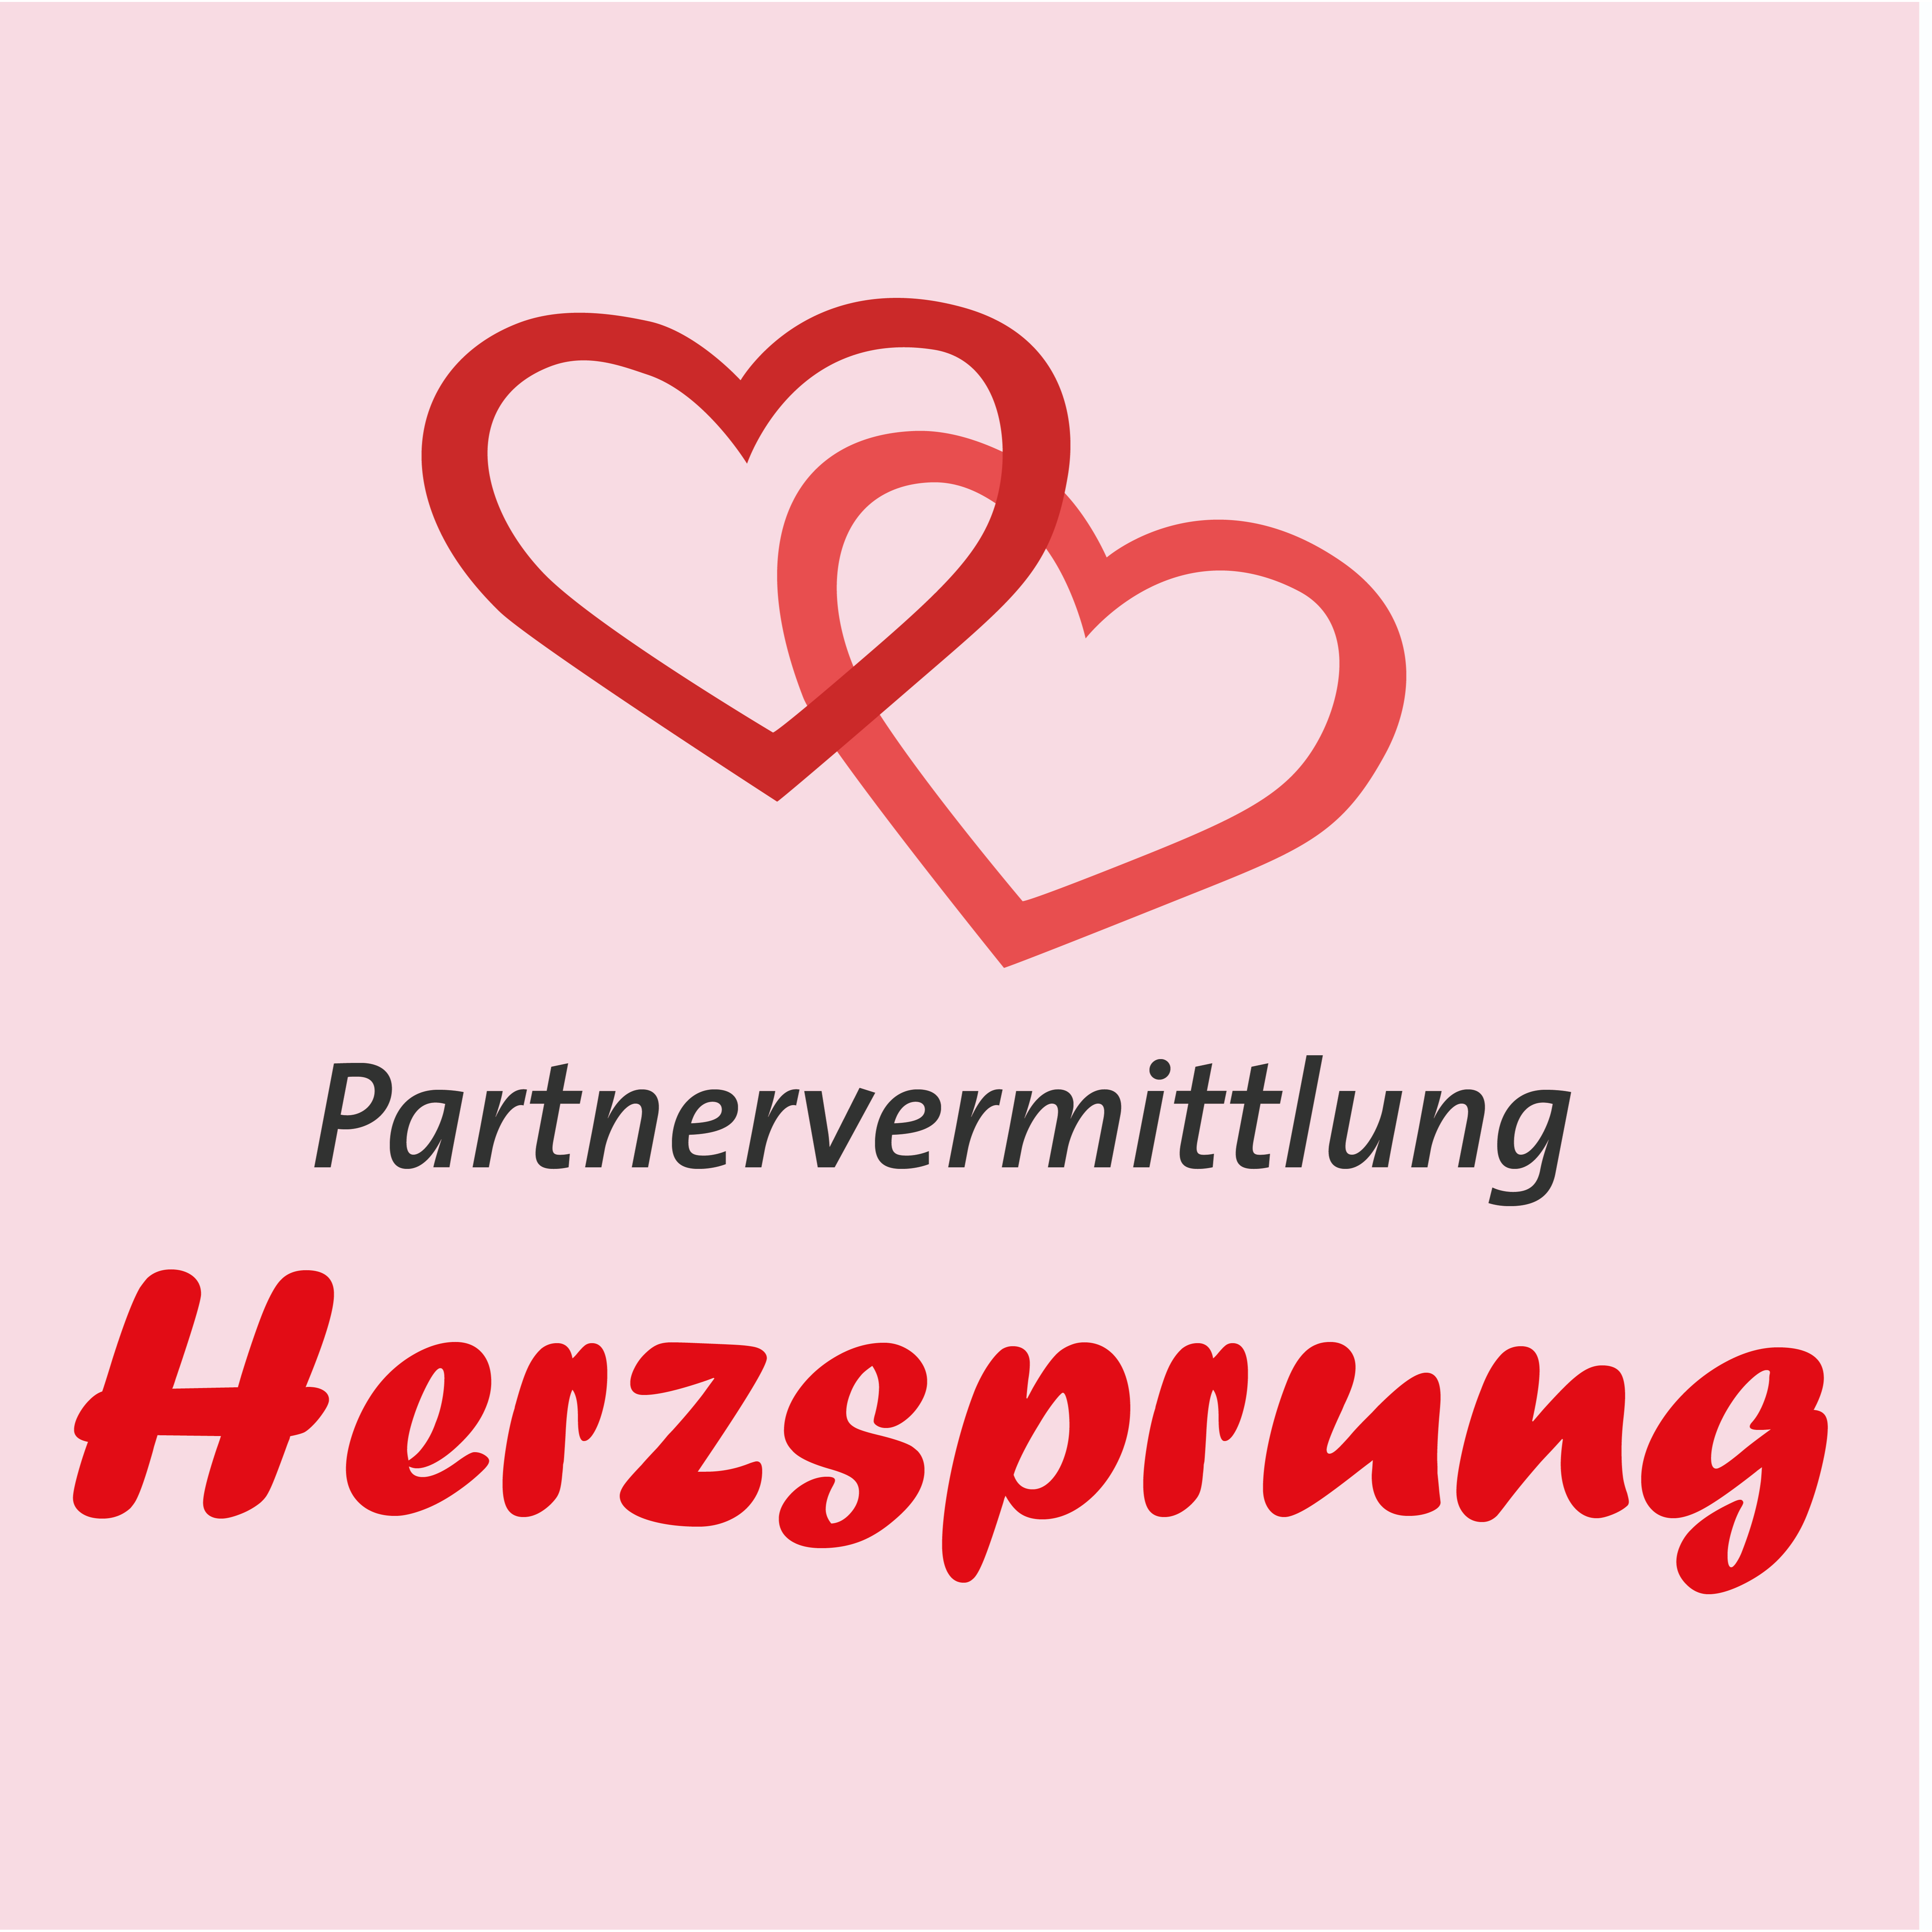 Partnervermittlungen wurzburg